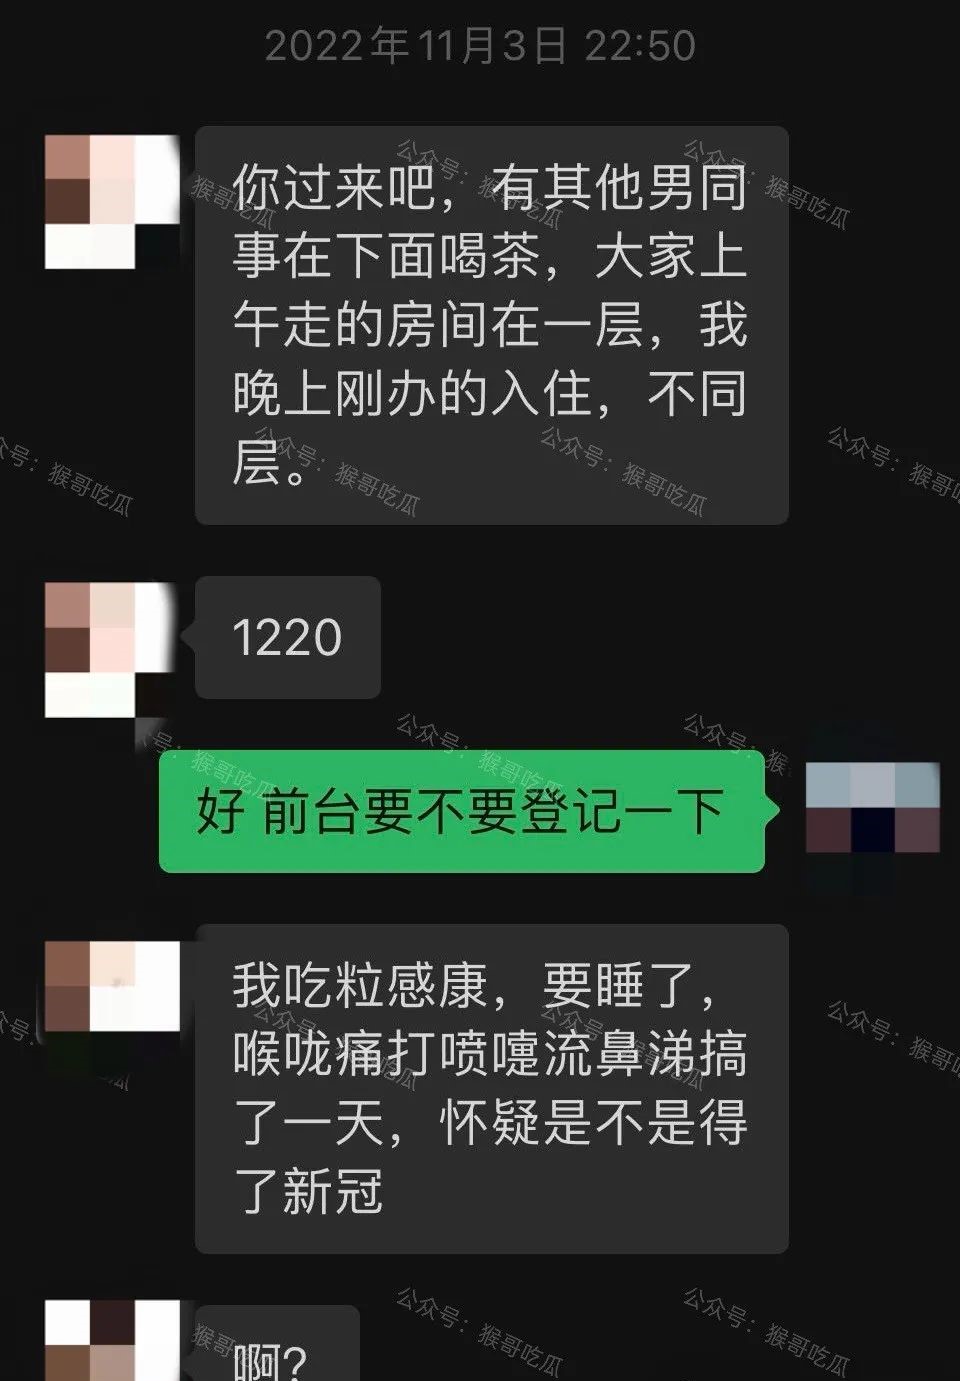 李绍萍与男方微信对话截图流出，当中包括相约会面的安排。